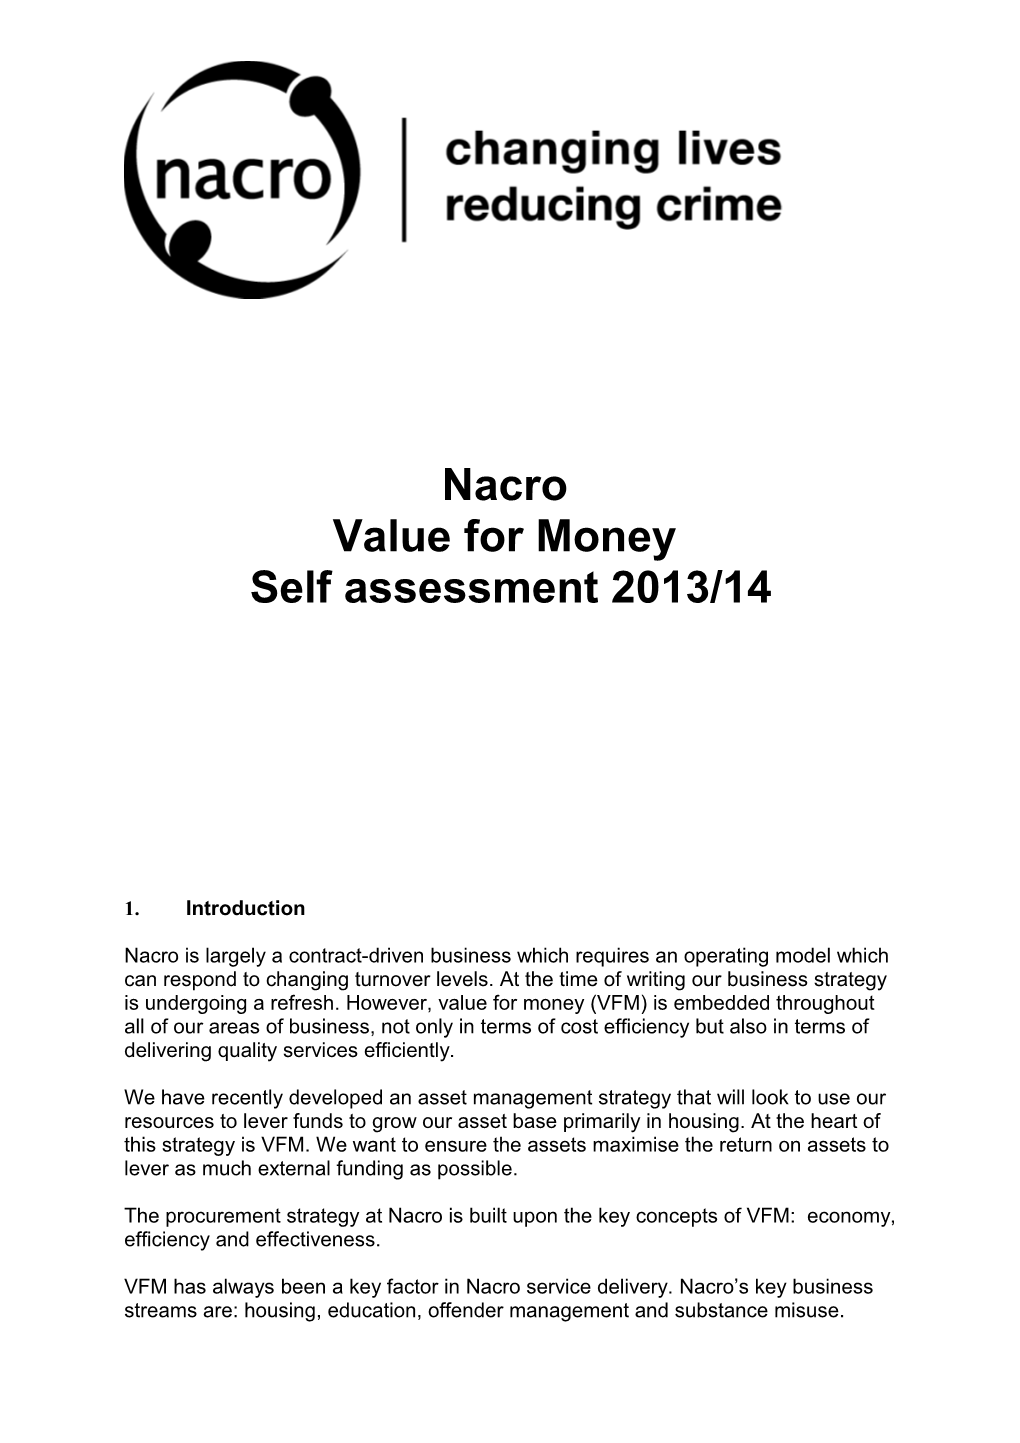 Value for Money Self Assessment 2013/14